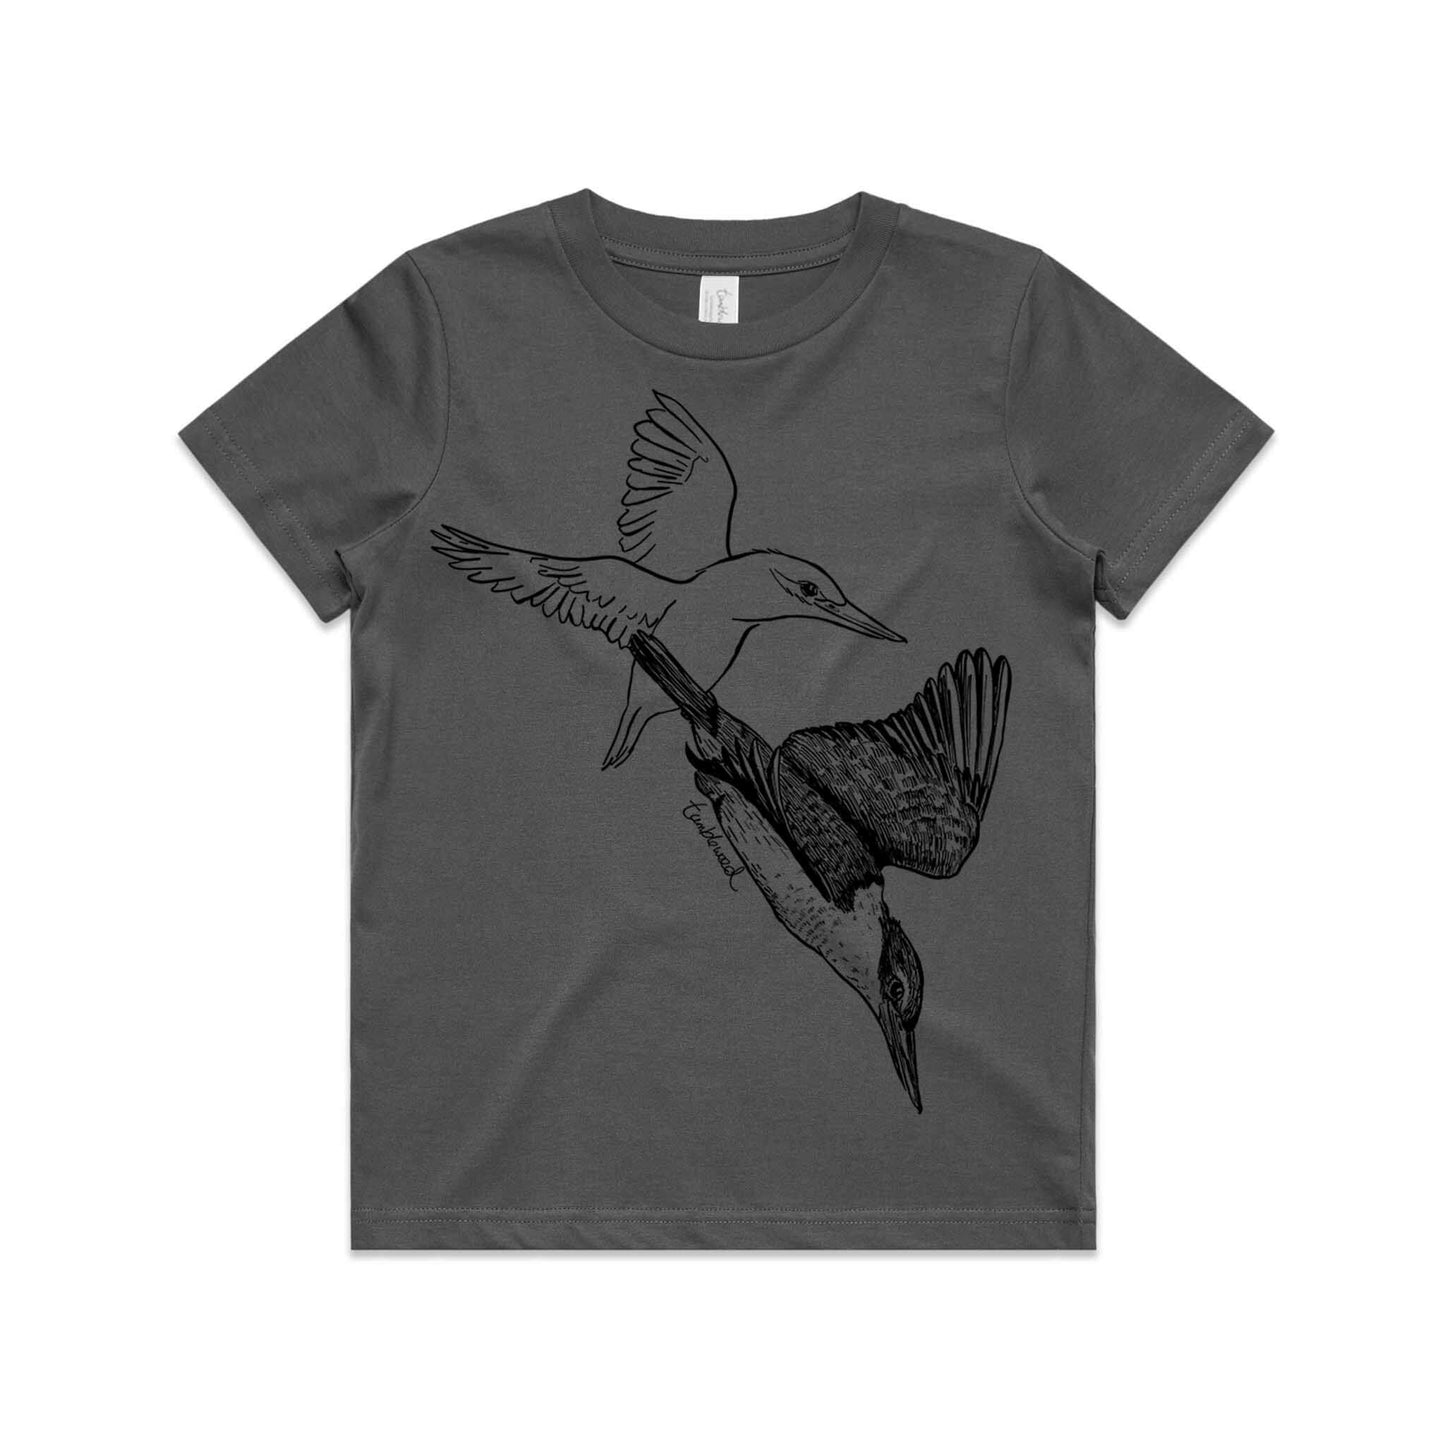 Kōtare/kingfisher Kids' T-shirt